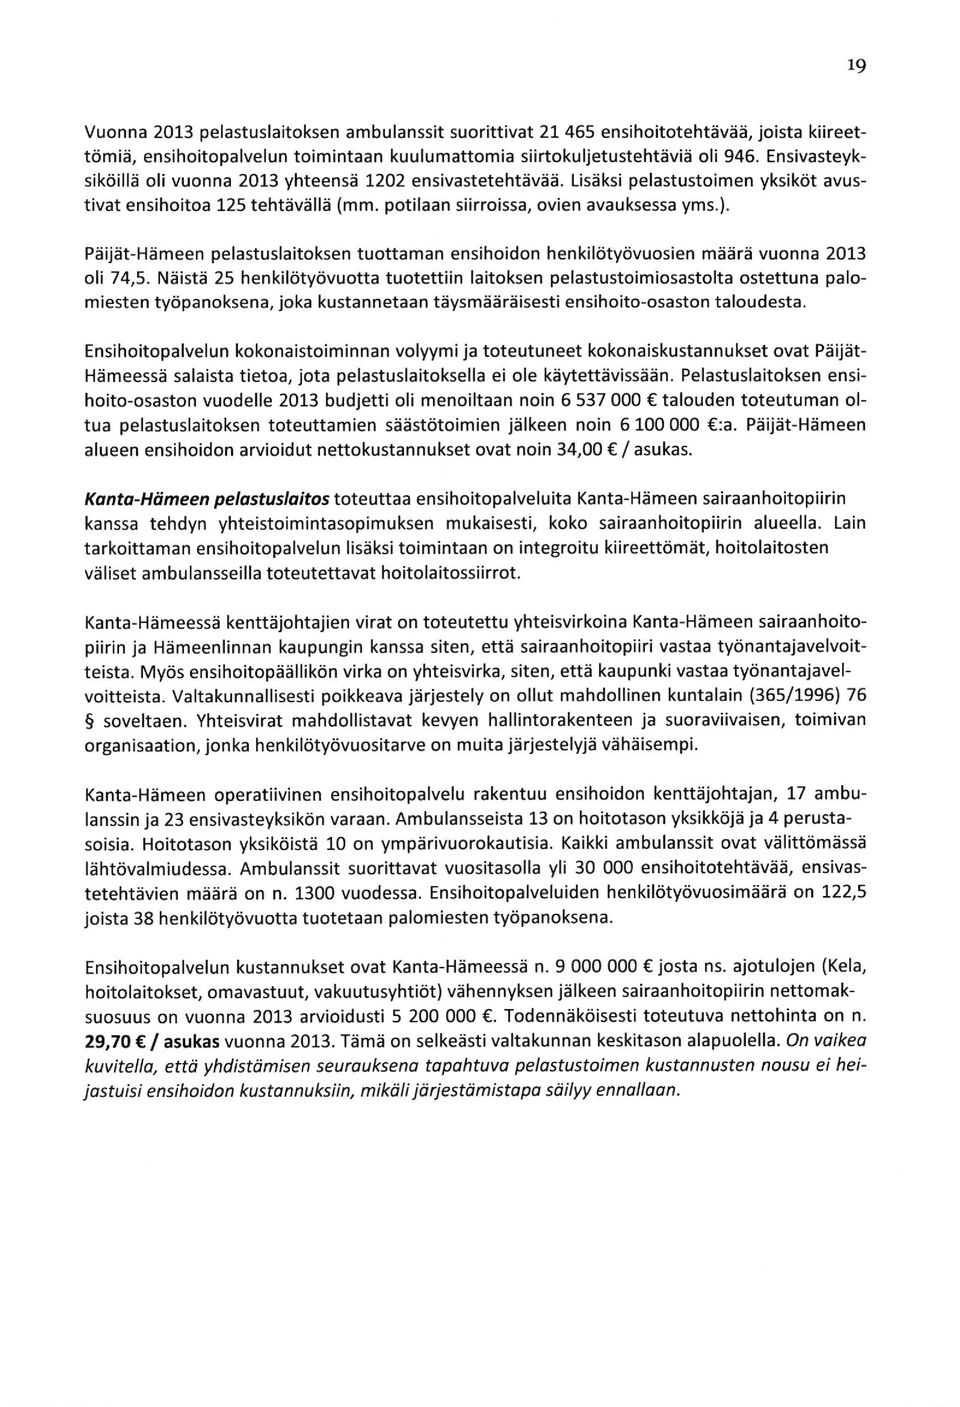 Peijat-Hameen pelastuslaitoksen tuottaman ensihoidon hen kilcitycivuosien maara vuonna 2013 oli 74,5.